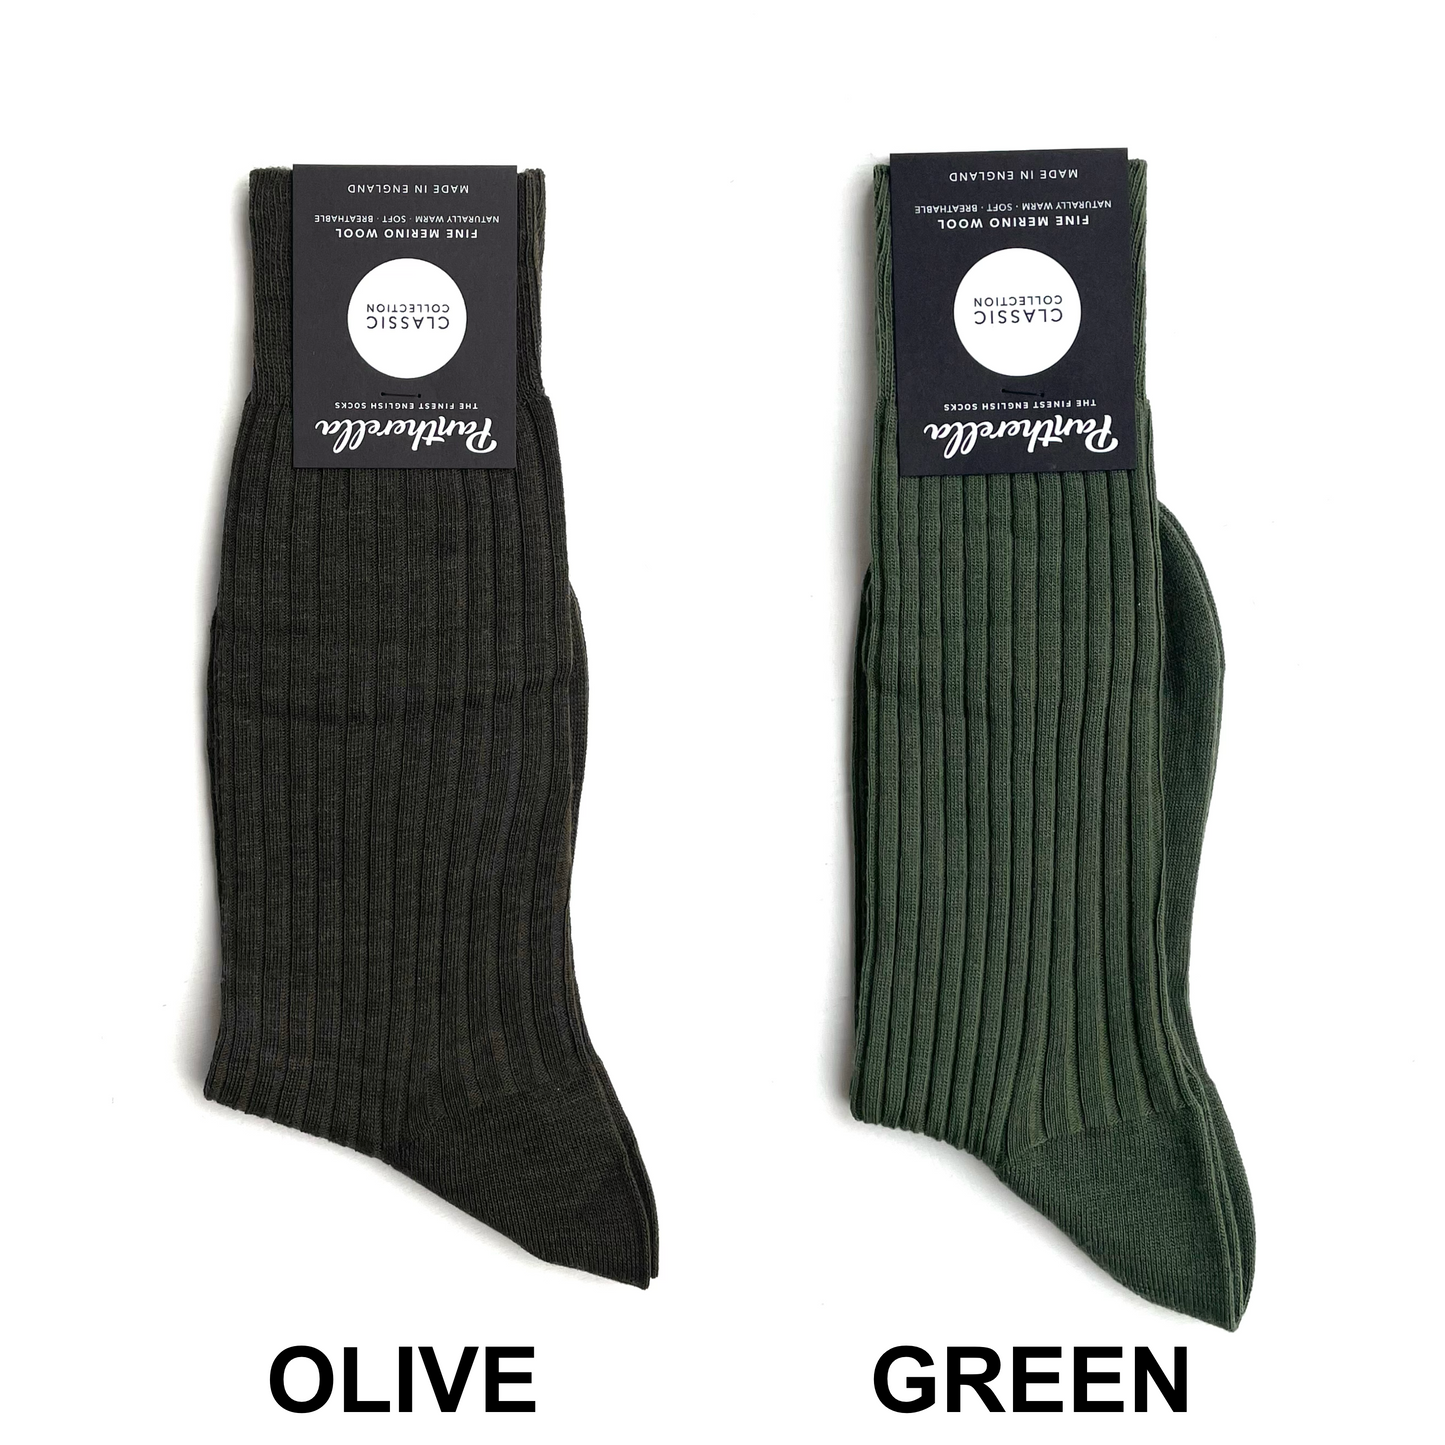 Pantherella Socks / Merino Wool